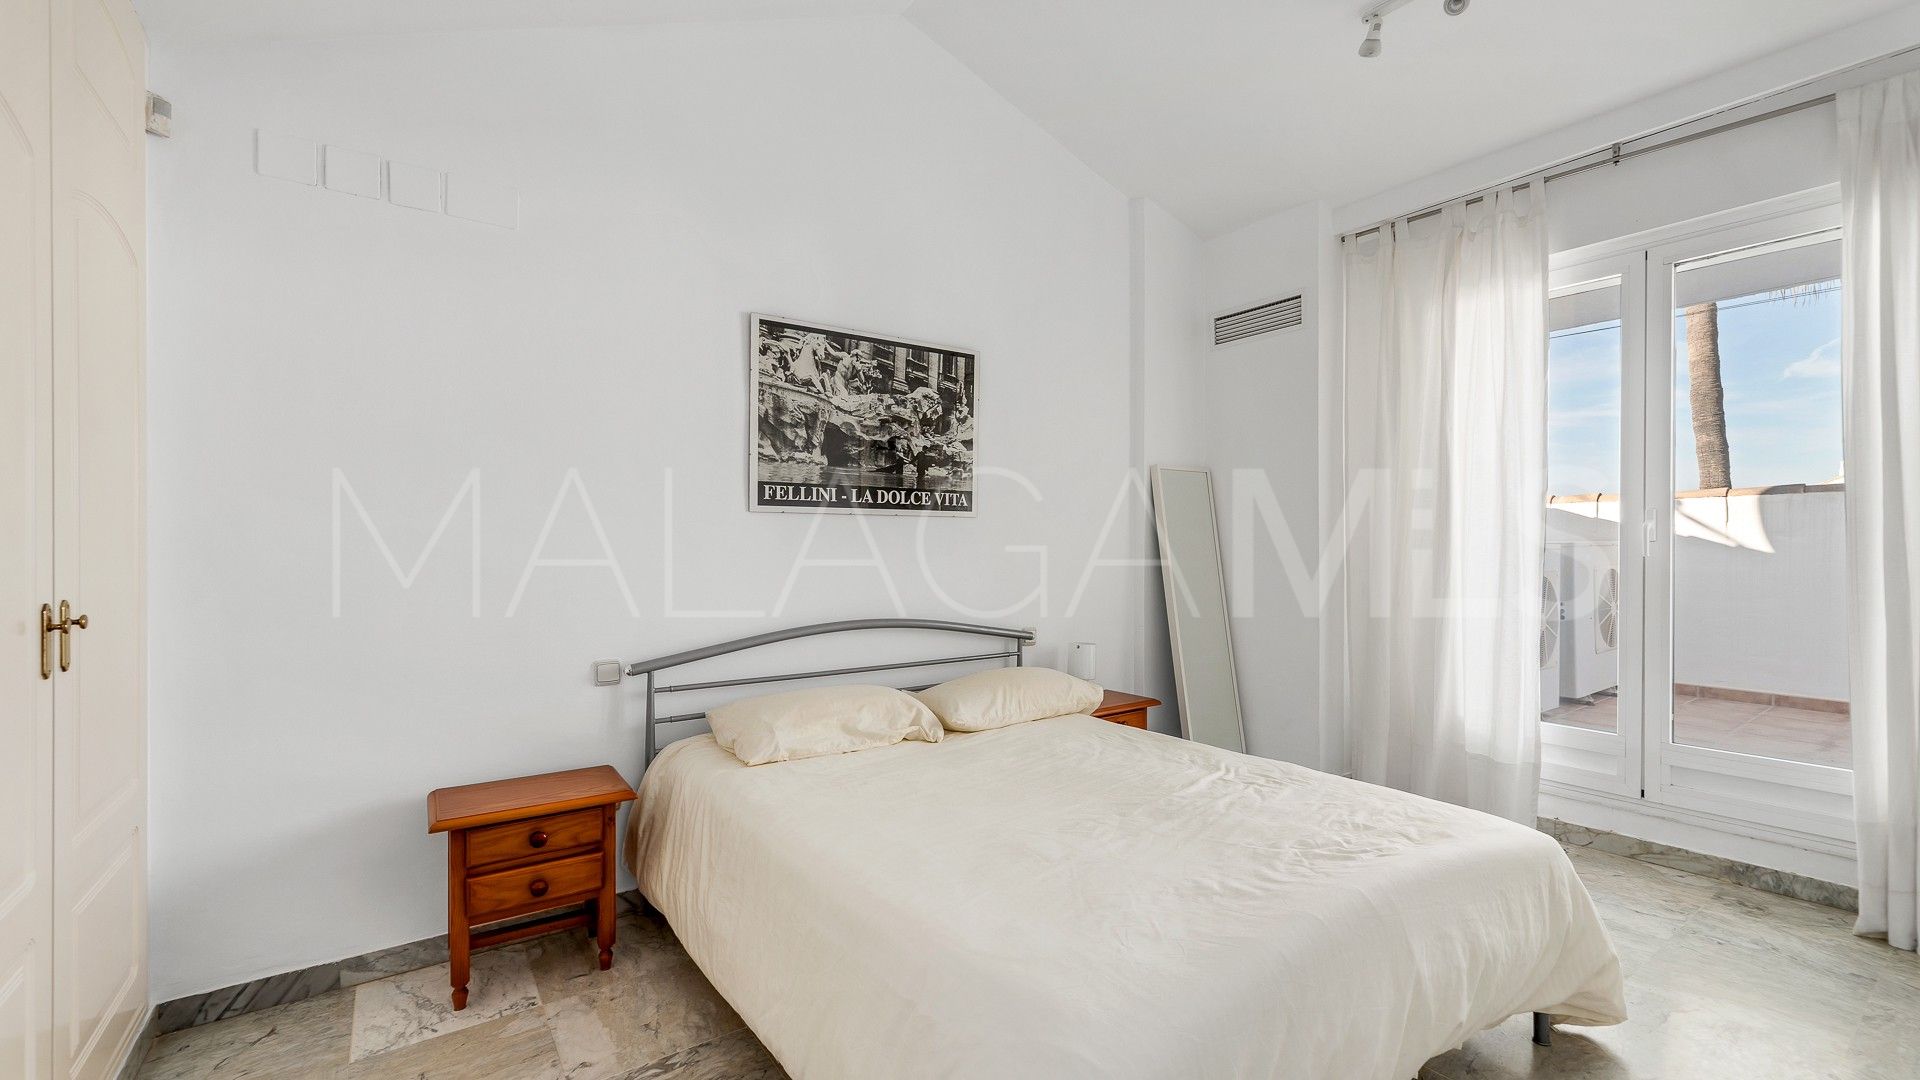 Adosado for sale with 3 bedrooms in Bahia de Marbella